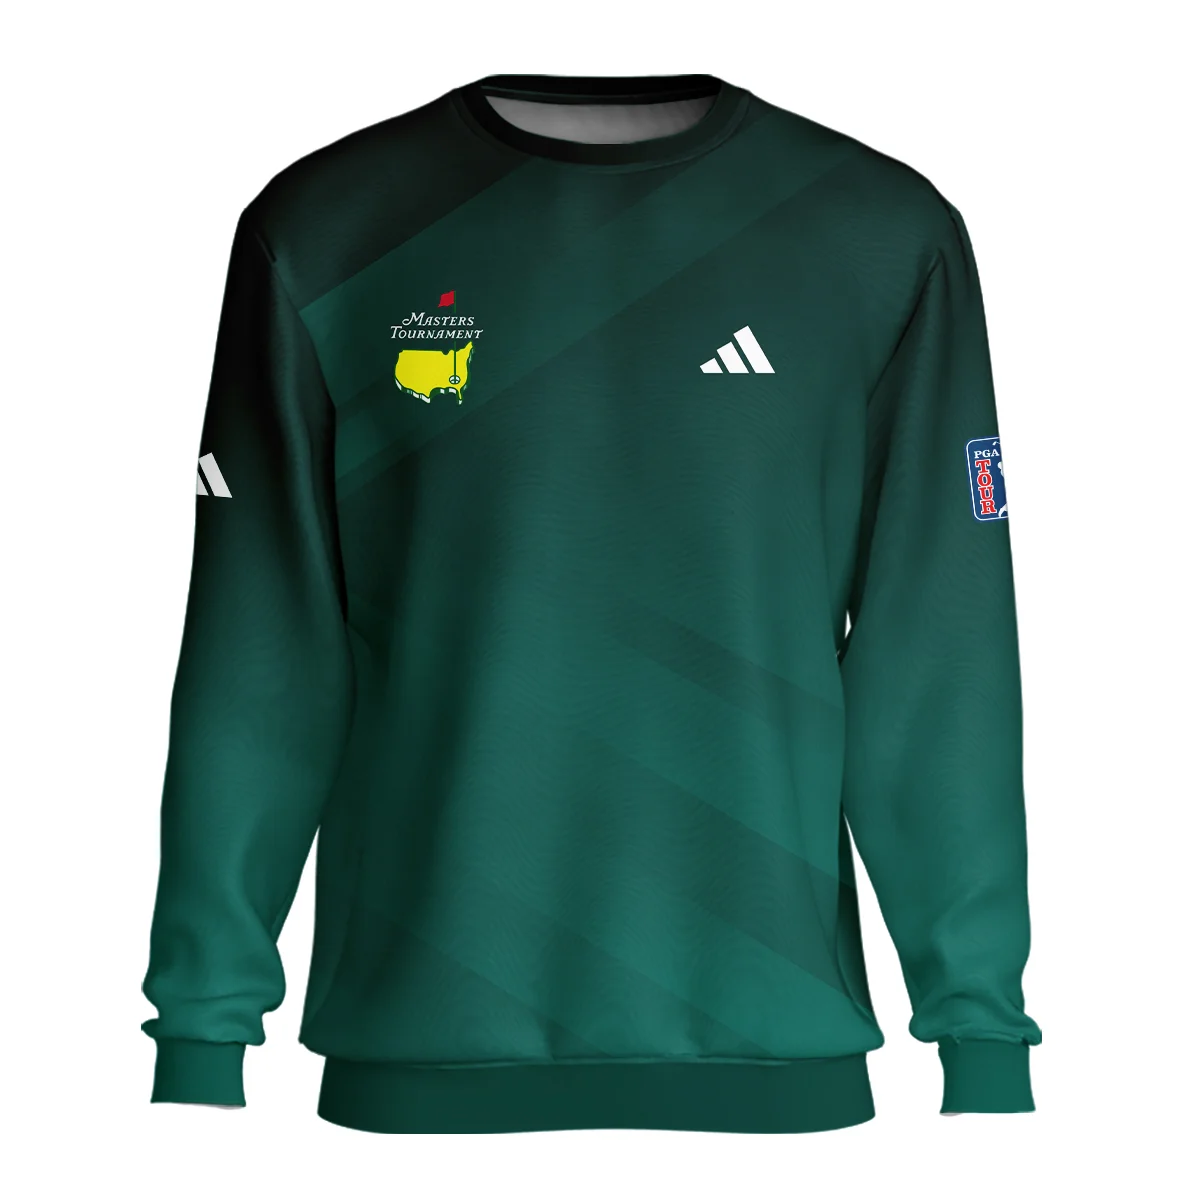 Masters Tournament Dark Green Gradient Golf Sport Adidas Zipper Hoodie Shirt Style Classic Zipper Hoodie Shirt